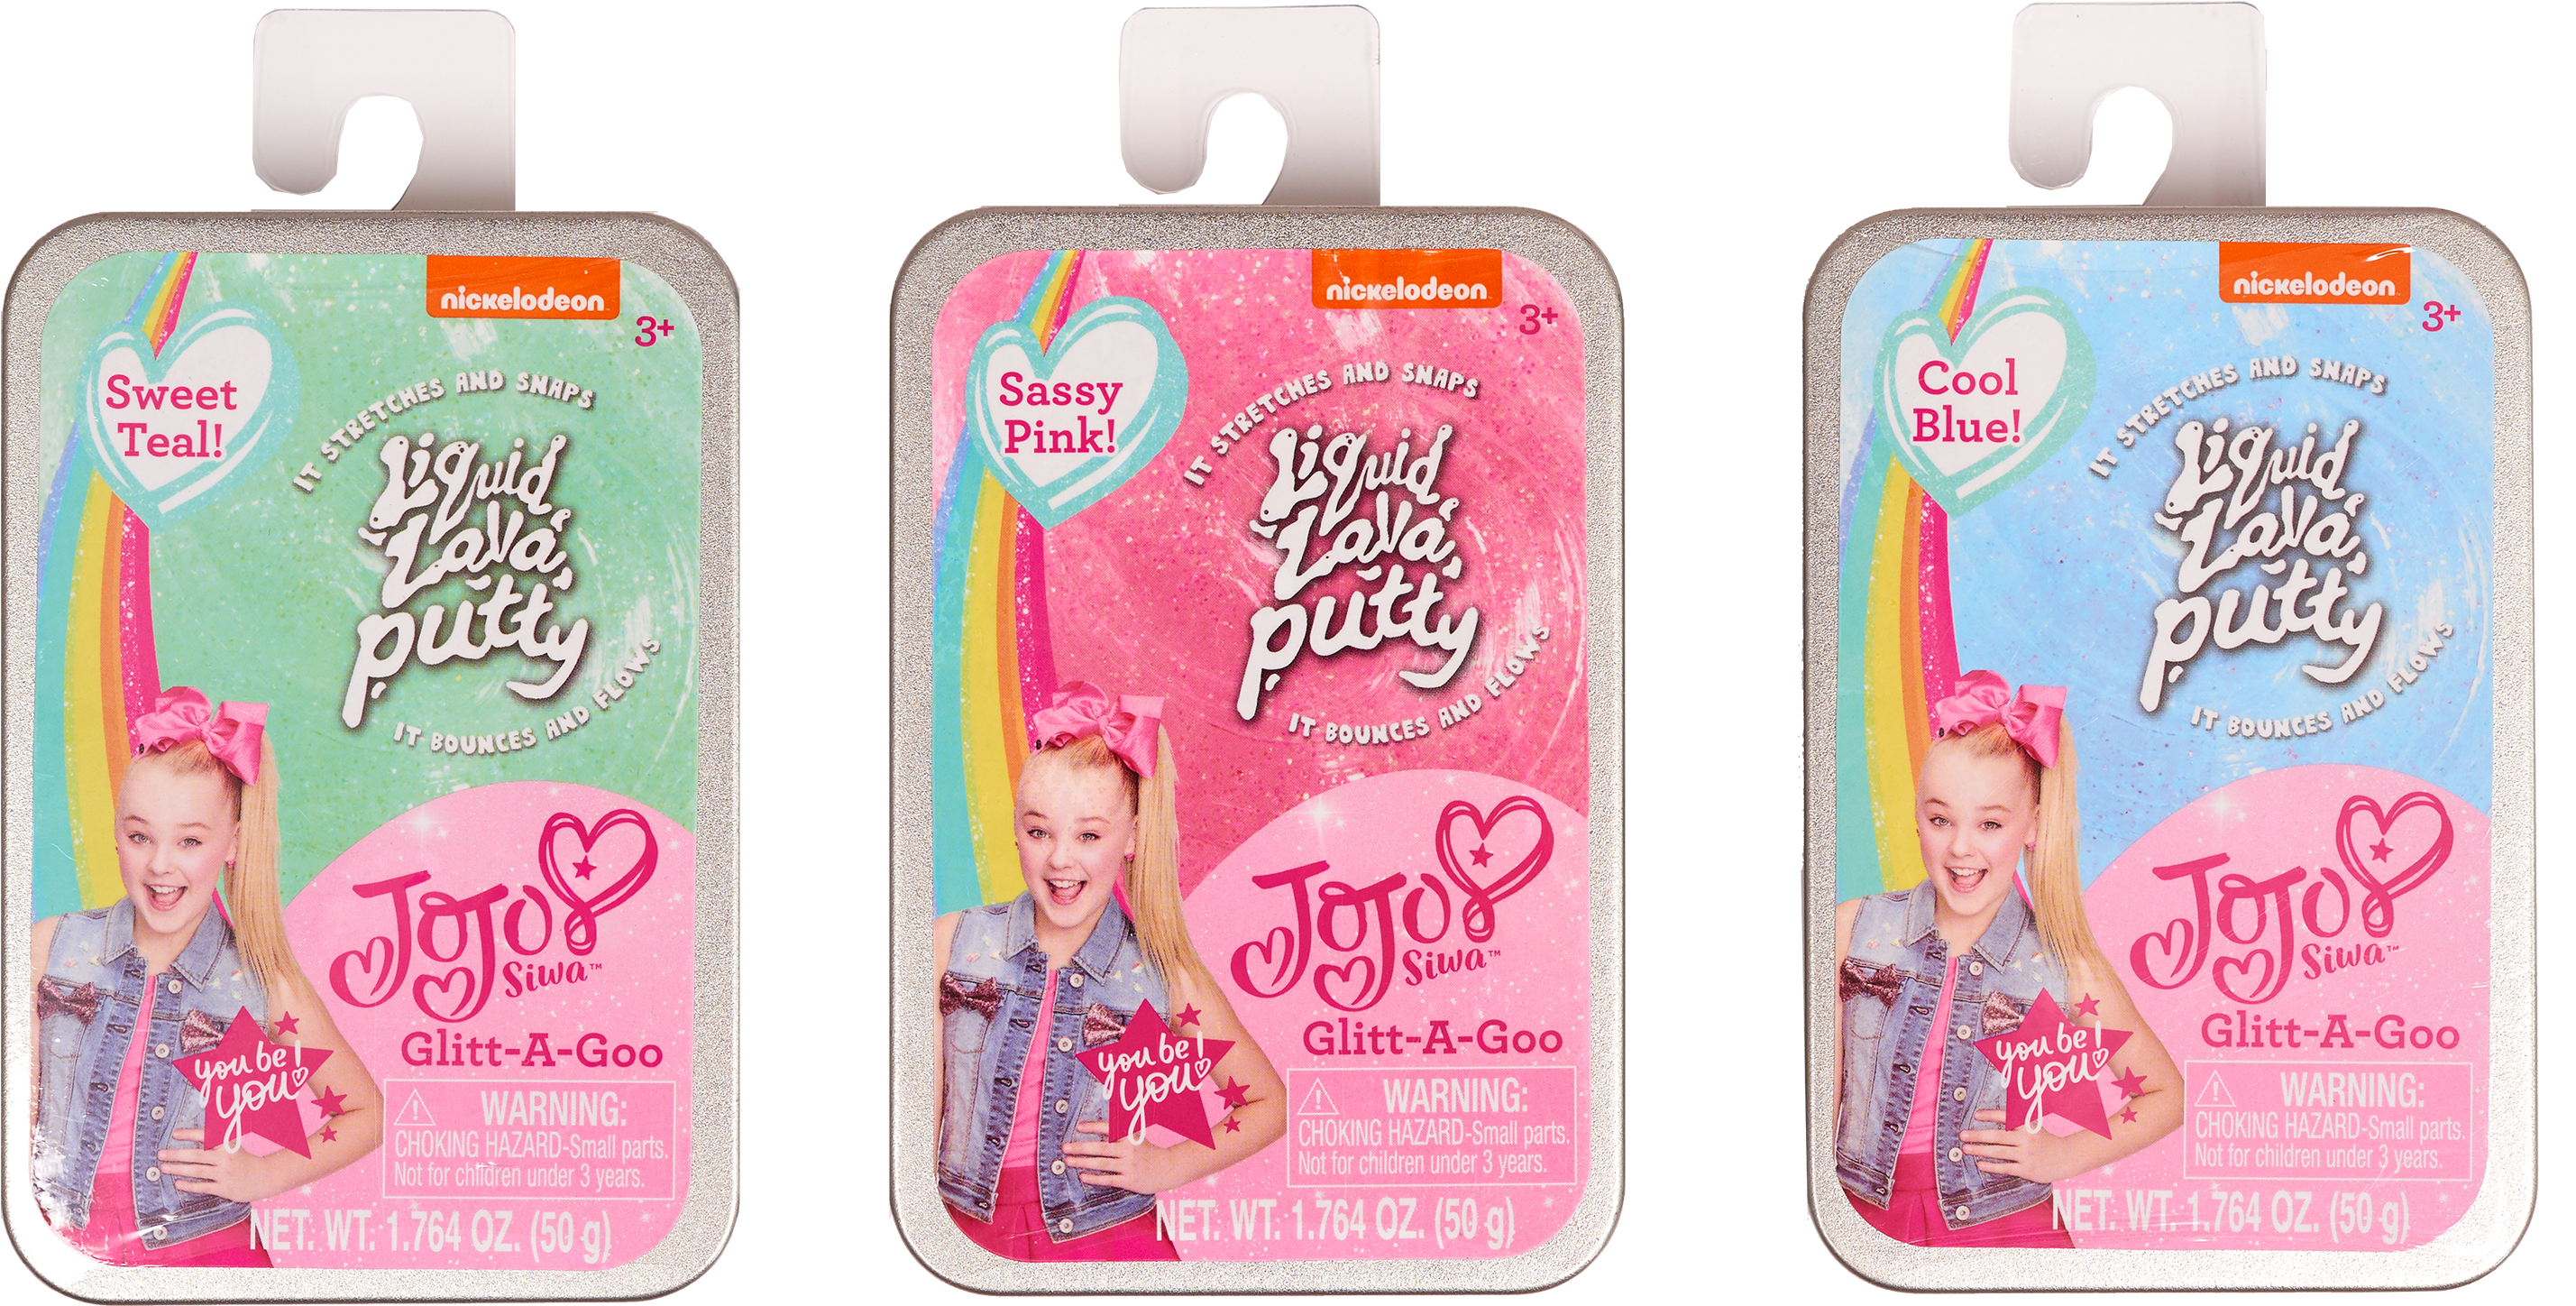 Nickelodeon Jojo Siwa Liquid Lava Putty Glitt A Goo - Juguetes De Jojo Siwa Clipart (3000x3000), Png Download